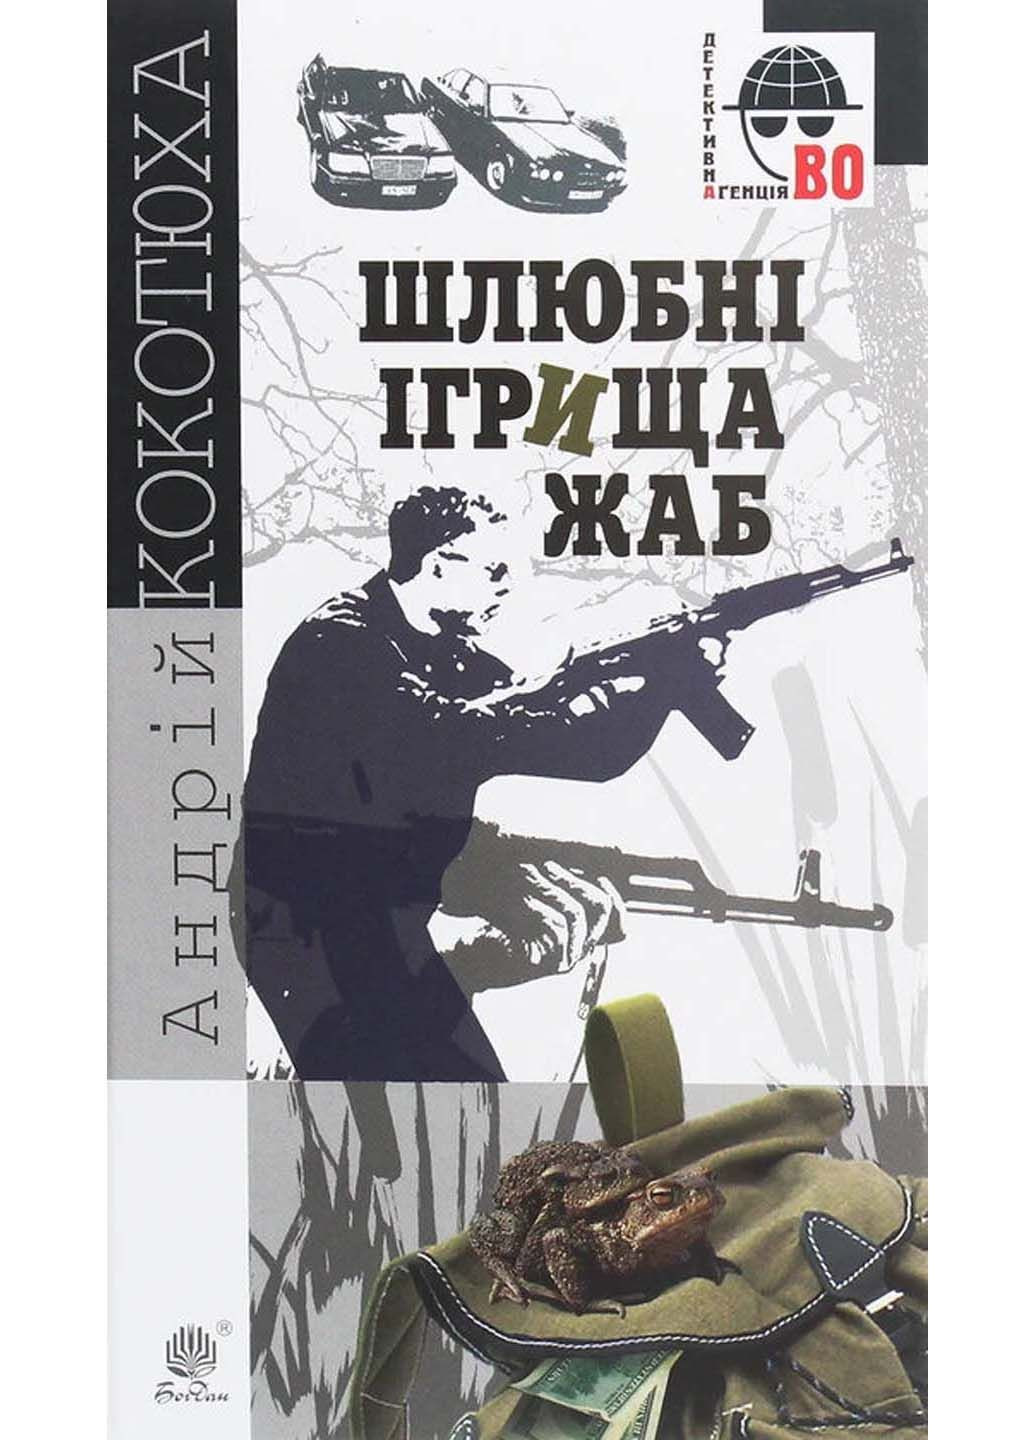 Книга Брачные игрища лягушек Андрей Кокотюха 2020г 192 с Навчальна книга - Богдан (293059604)